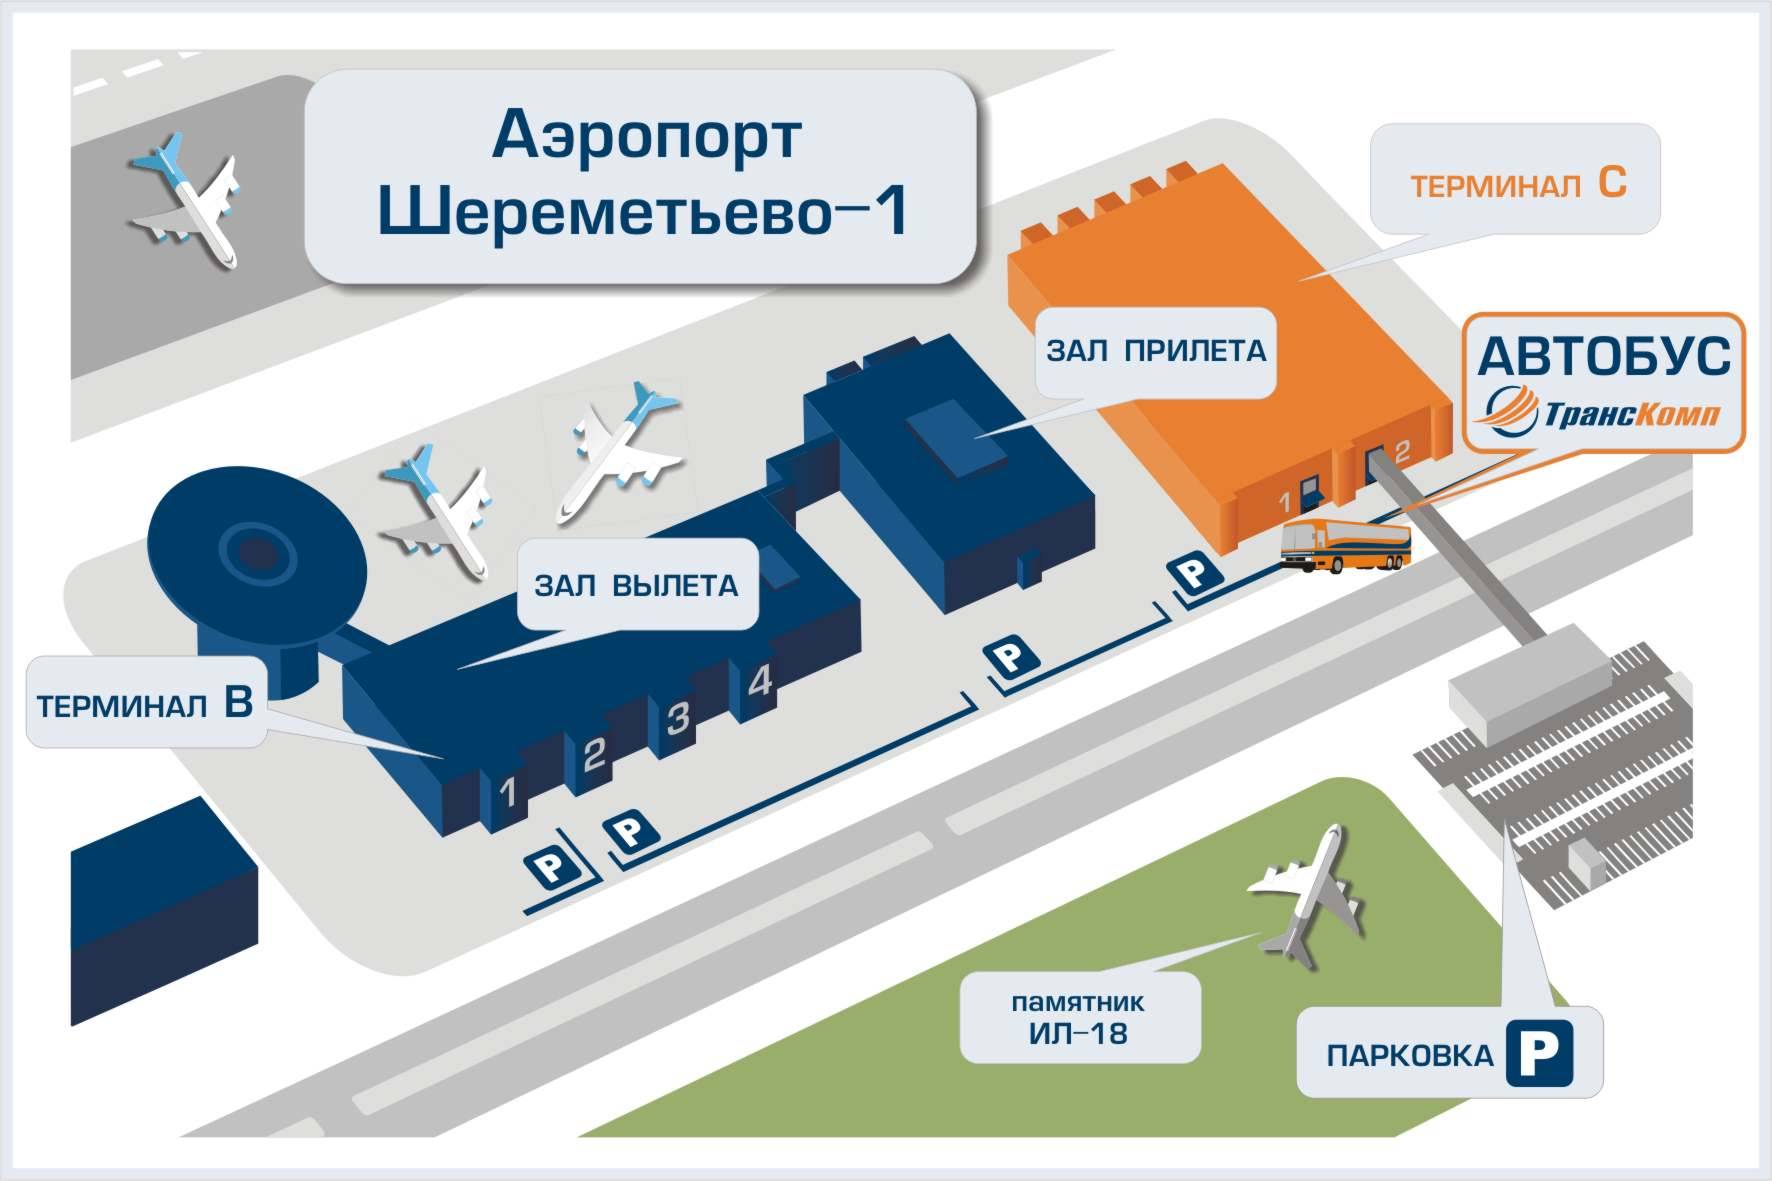 Аэропорт курск: контактная информация и адрес, как добраться, предоставляемые услуги и стоимость